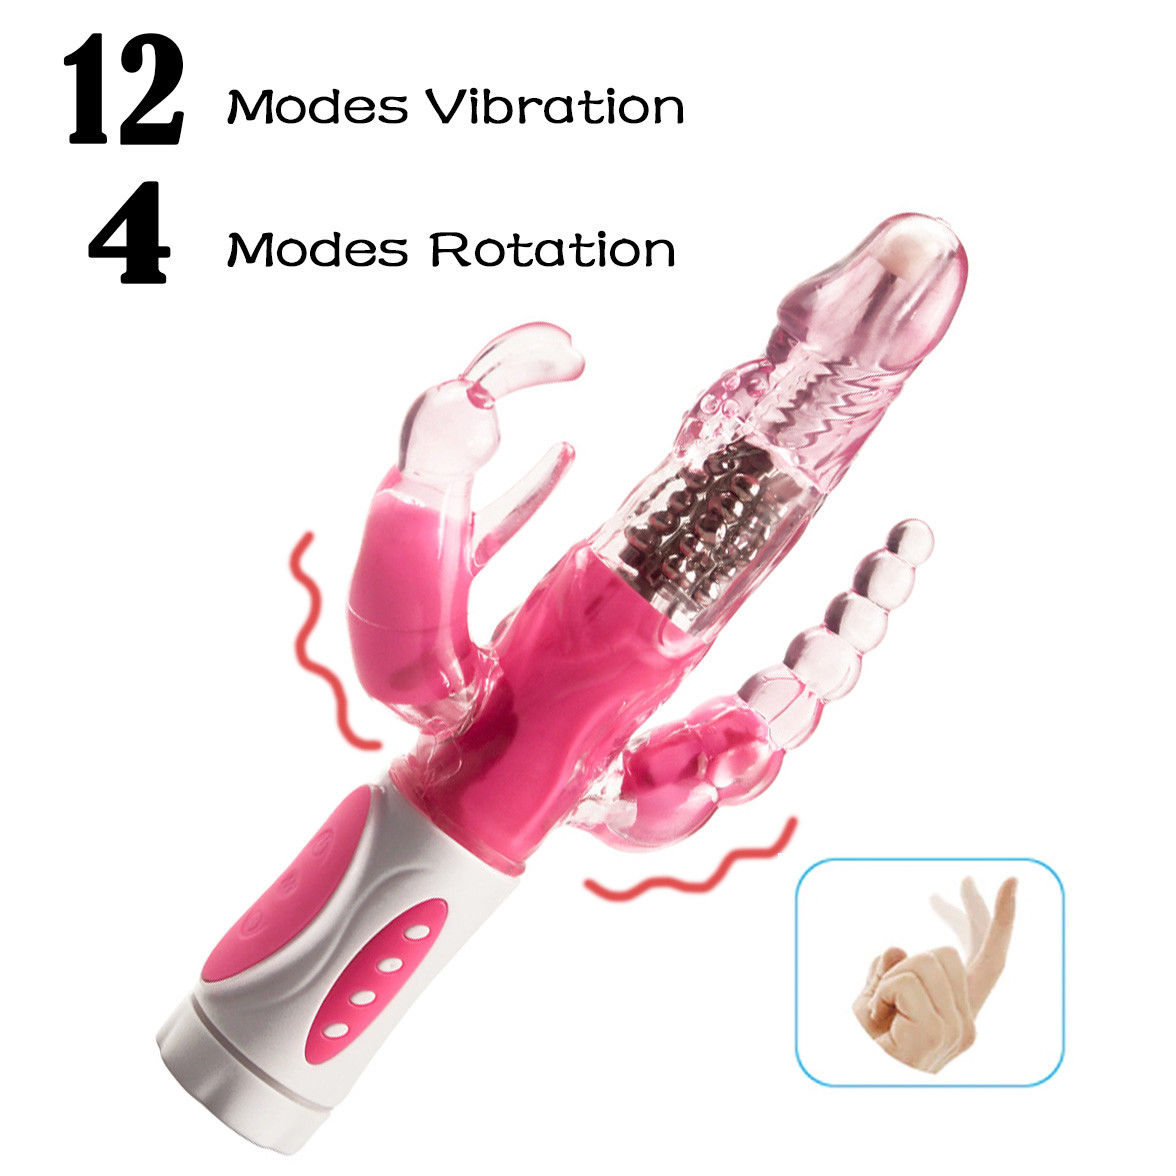 12 Modes Vibration vibrator